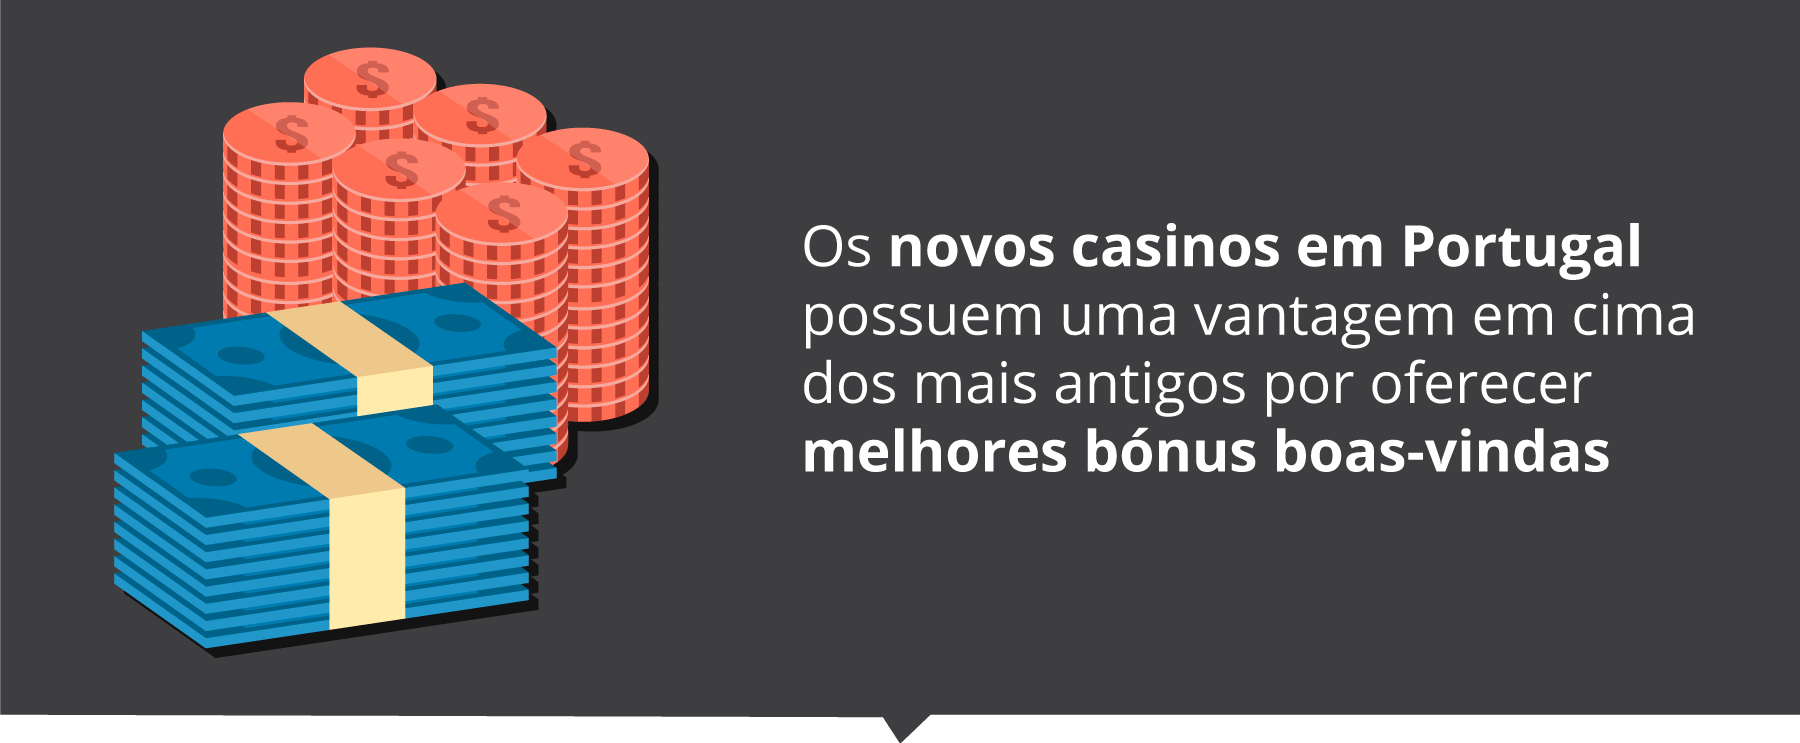 booongo online casinos